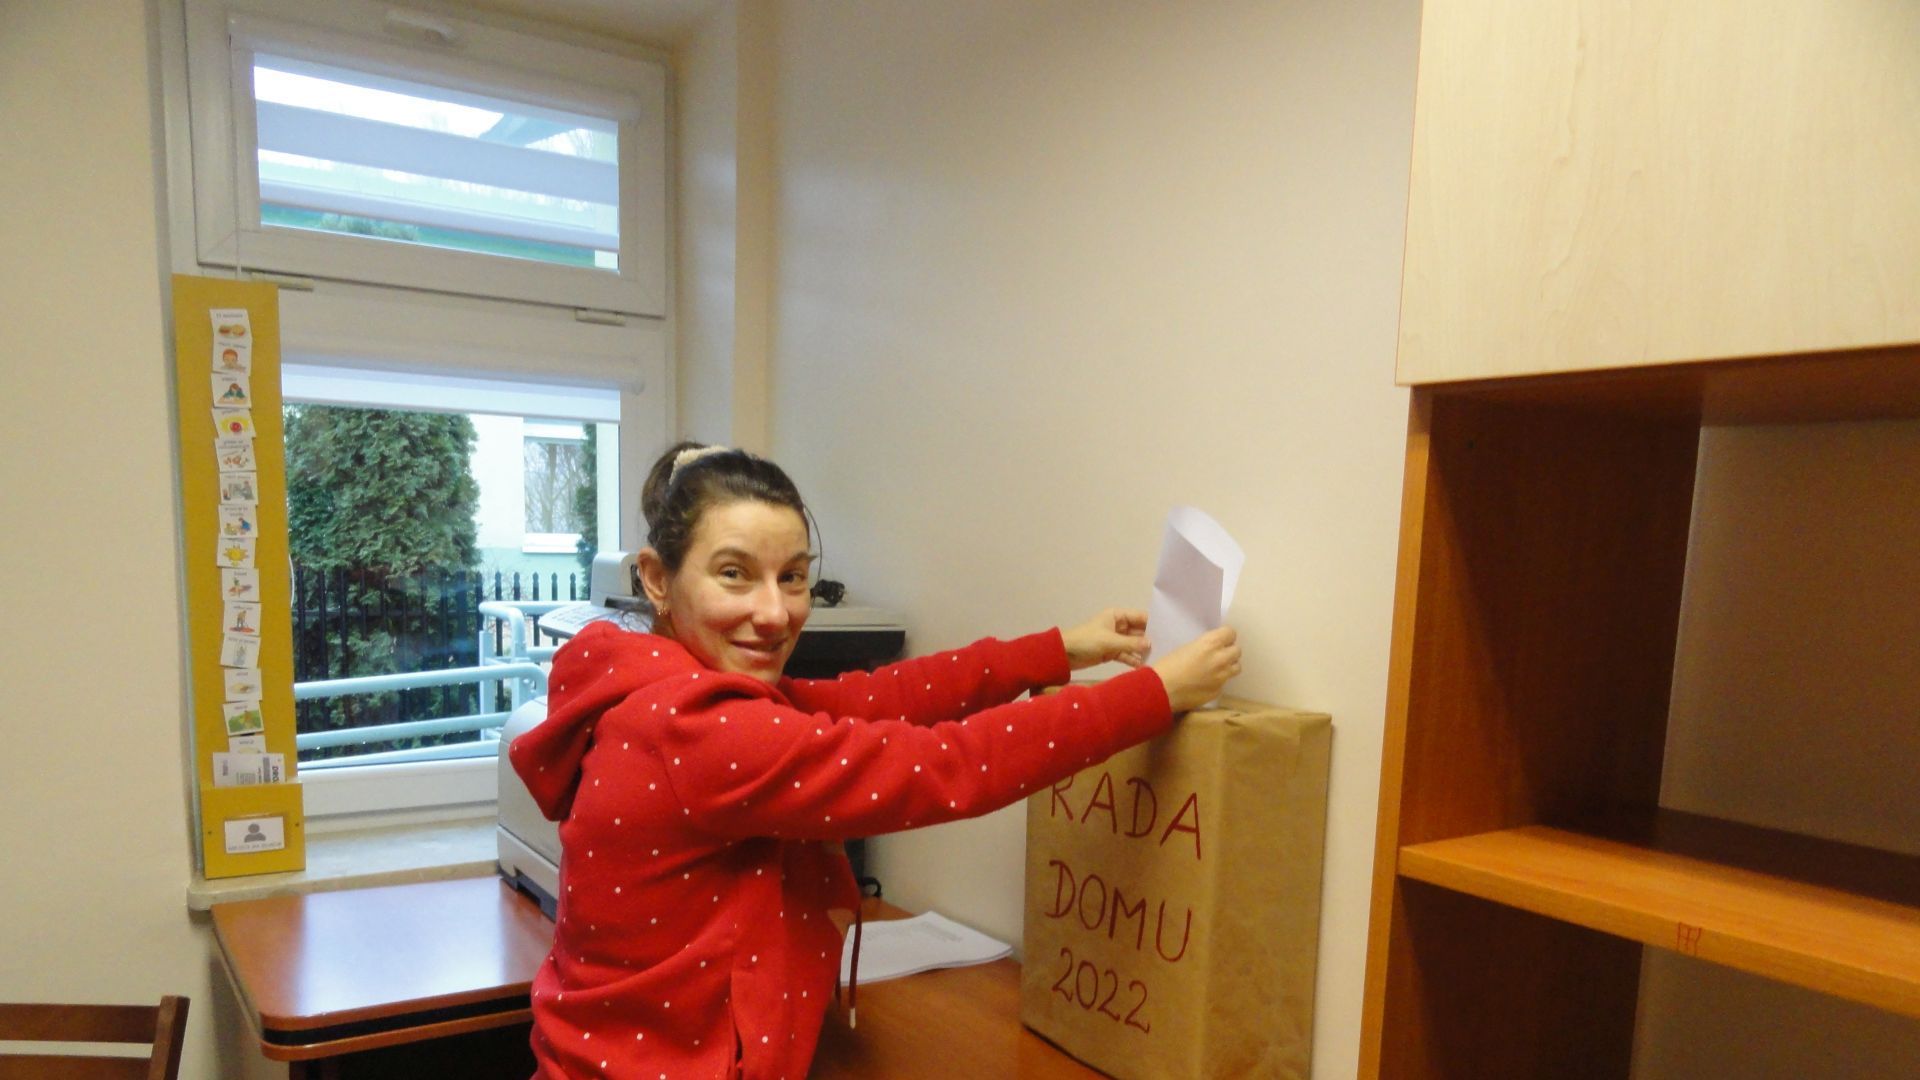 Justyna K. wrzuca kartę wyborczą do urny wyborczej.